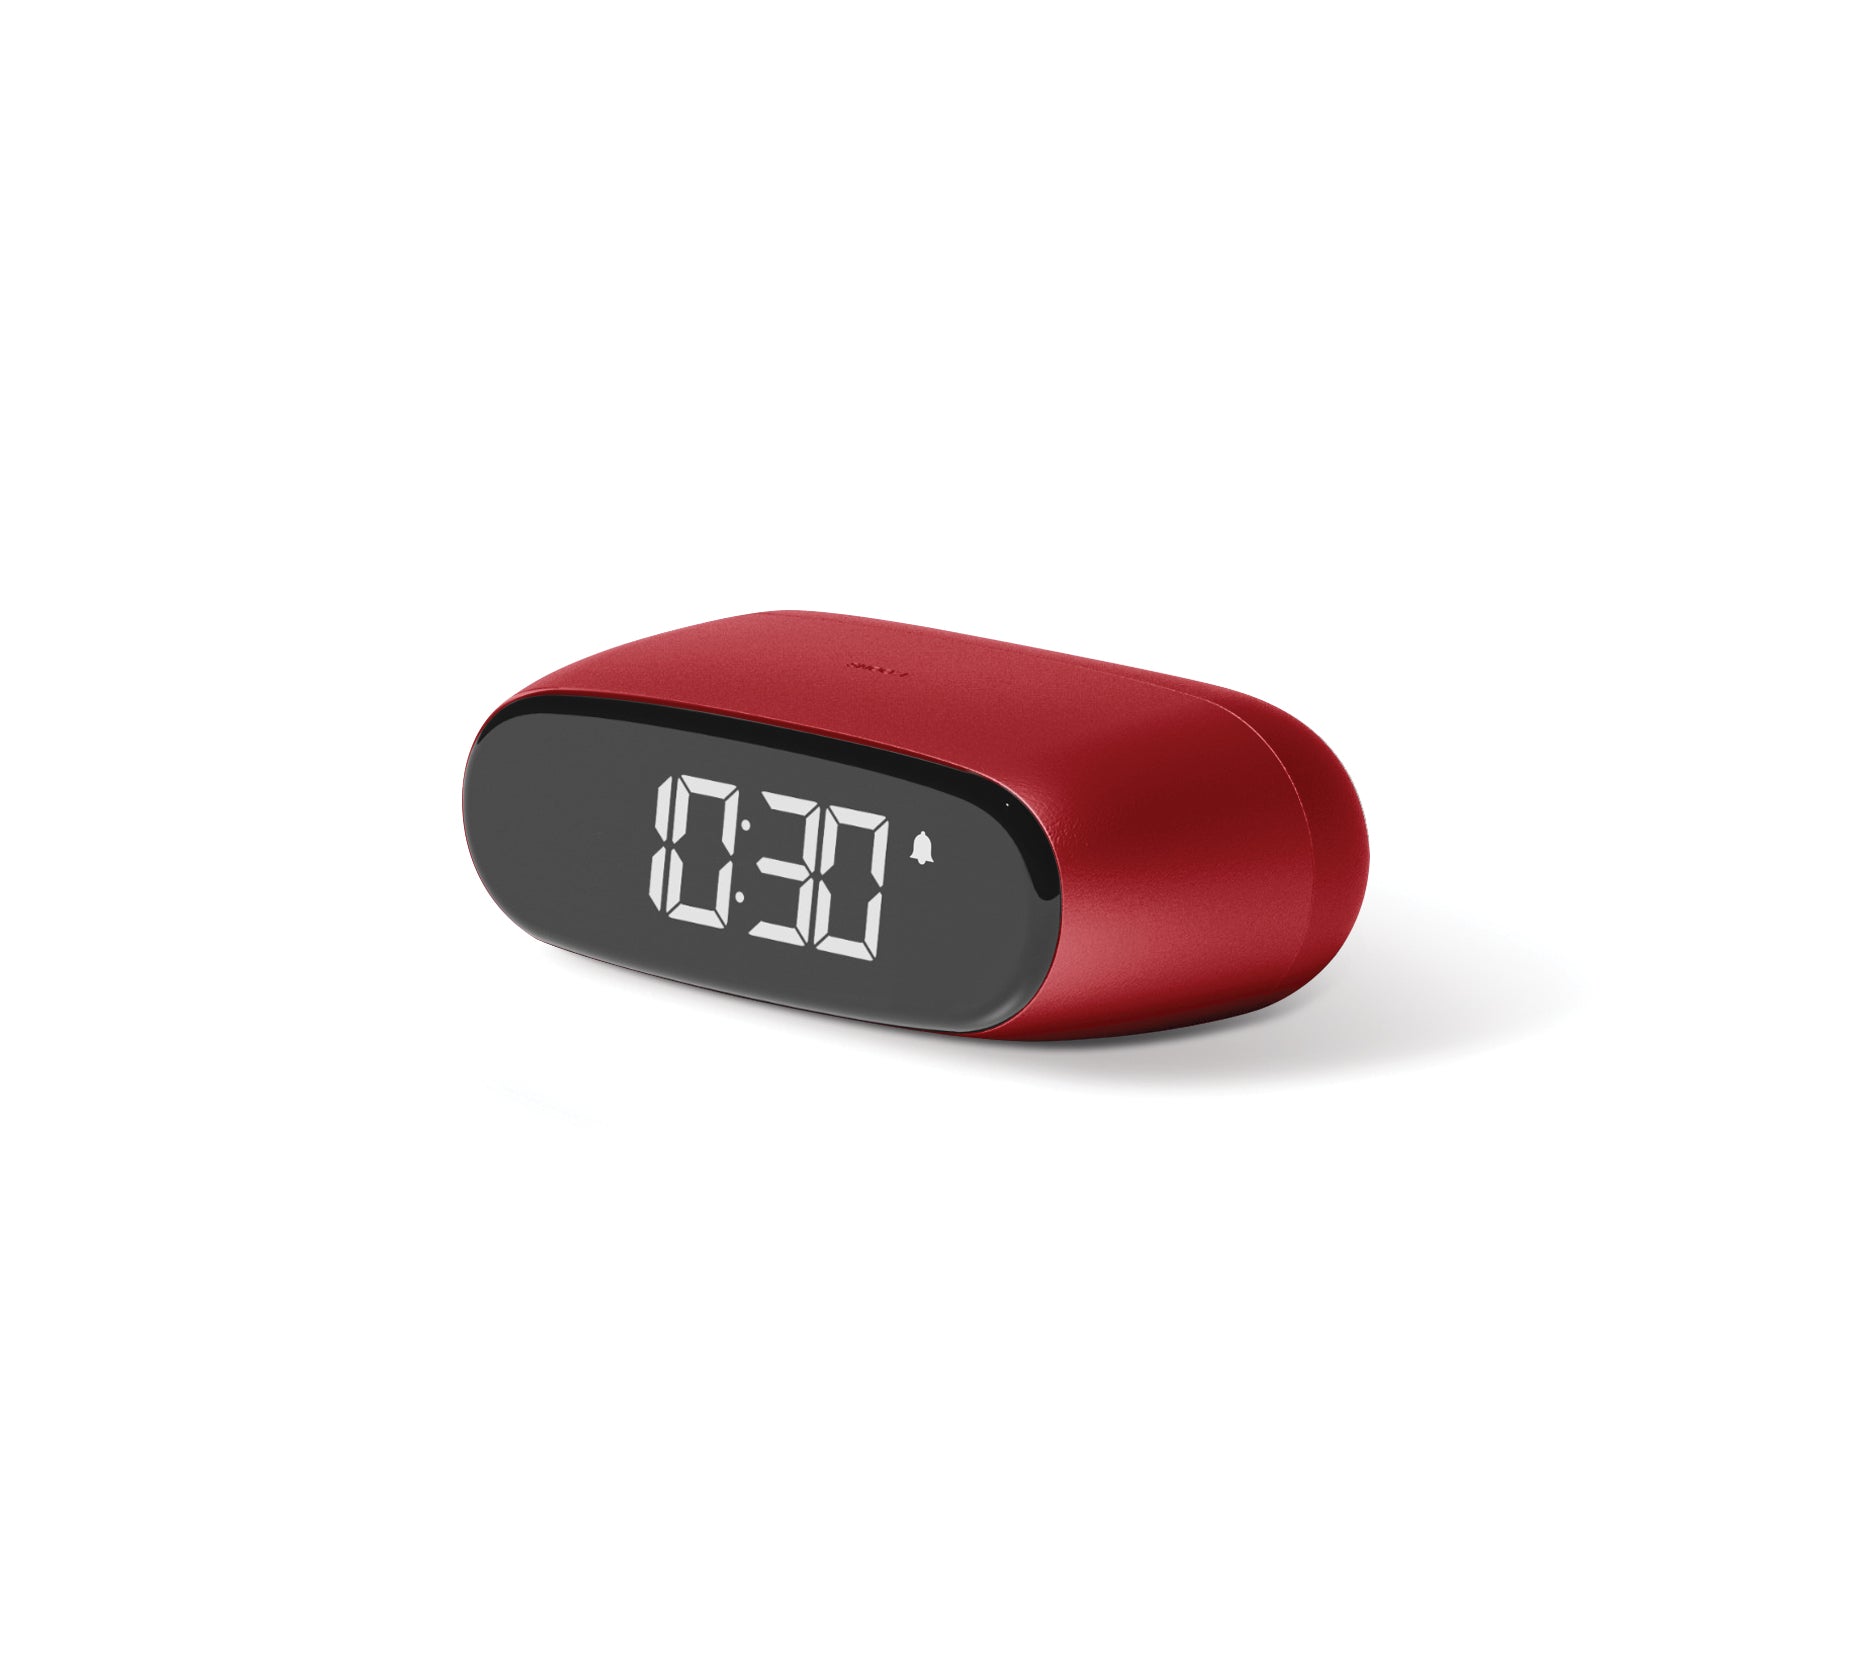 Lexon Minut Alarm Clock - Red by Manuela Simonelli & Andrea Quaglio